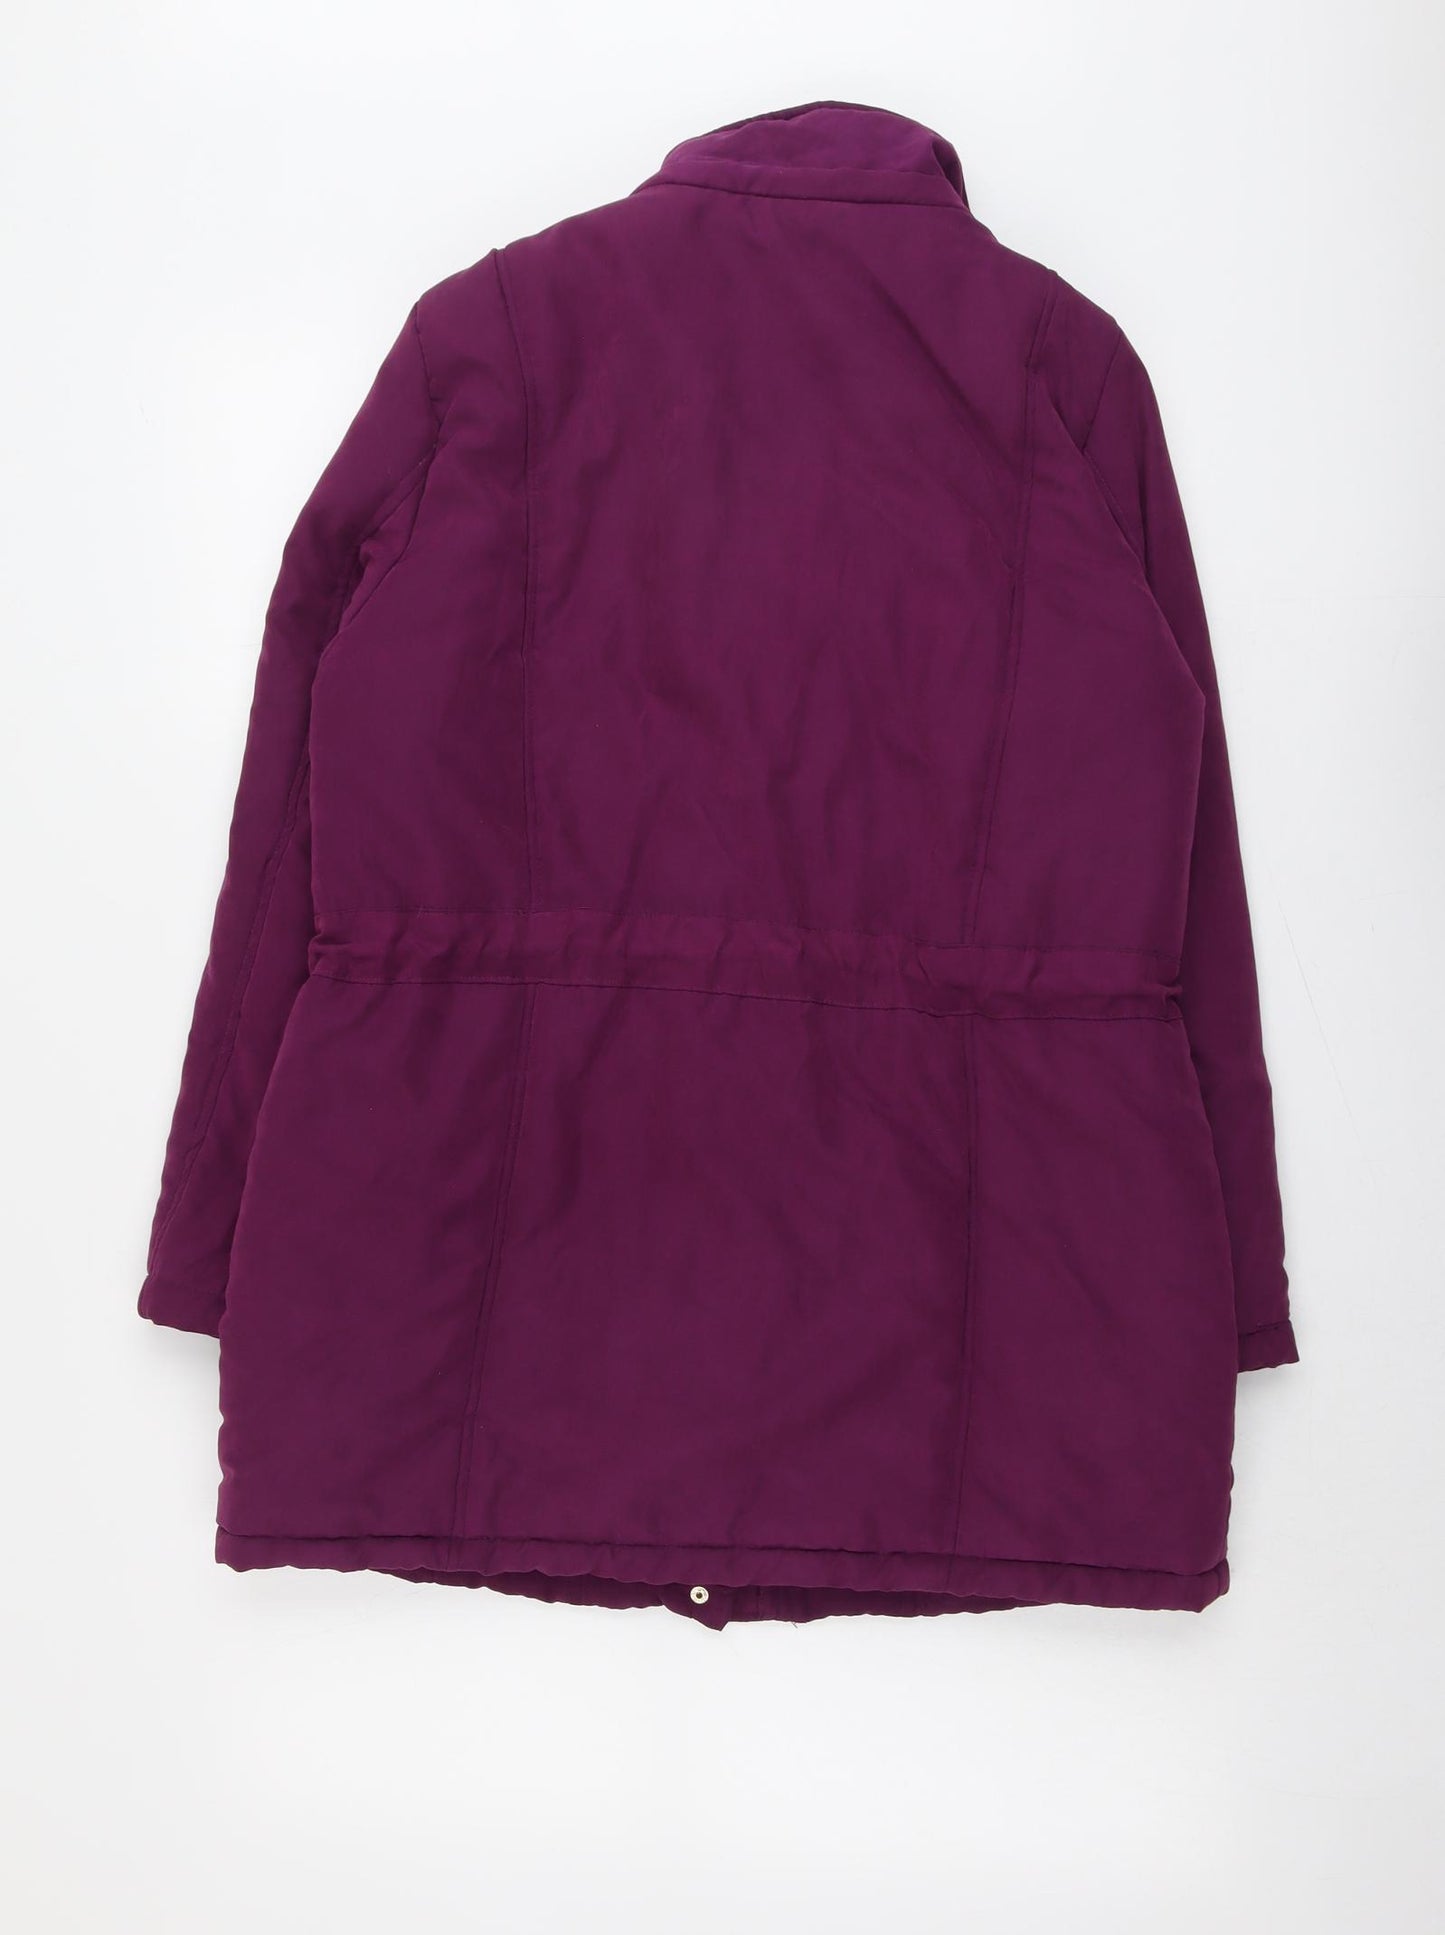 Bonmarché Womens Purple Jacket Size 12 Zip